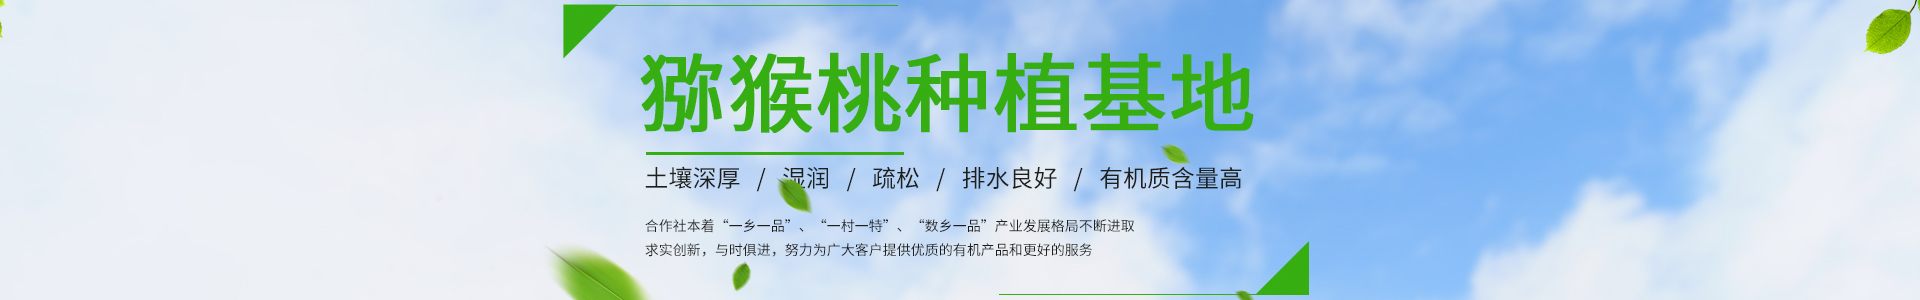 电竞比赛押注app(中国)官方网站V9.8.3 - IOS/安卓版手机APP下载